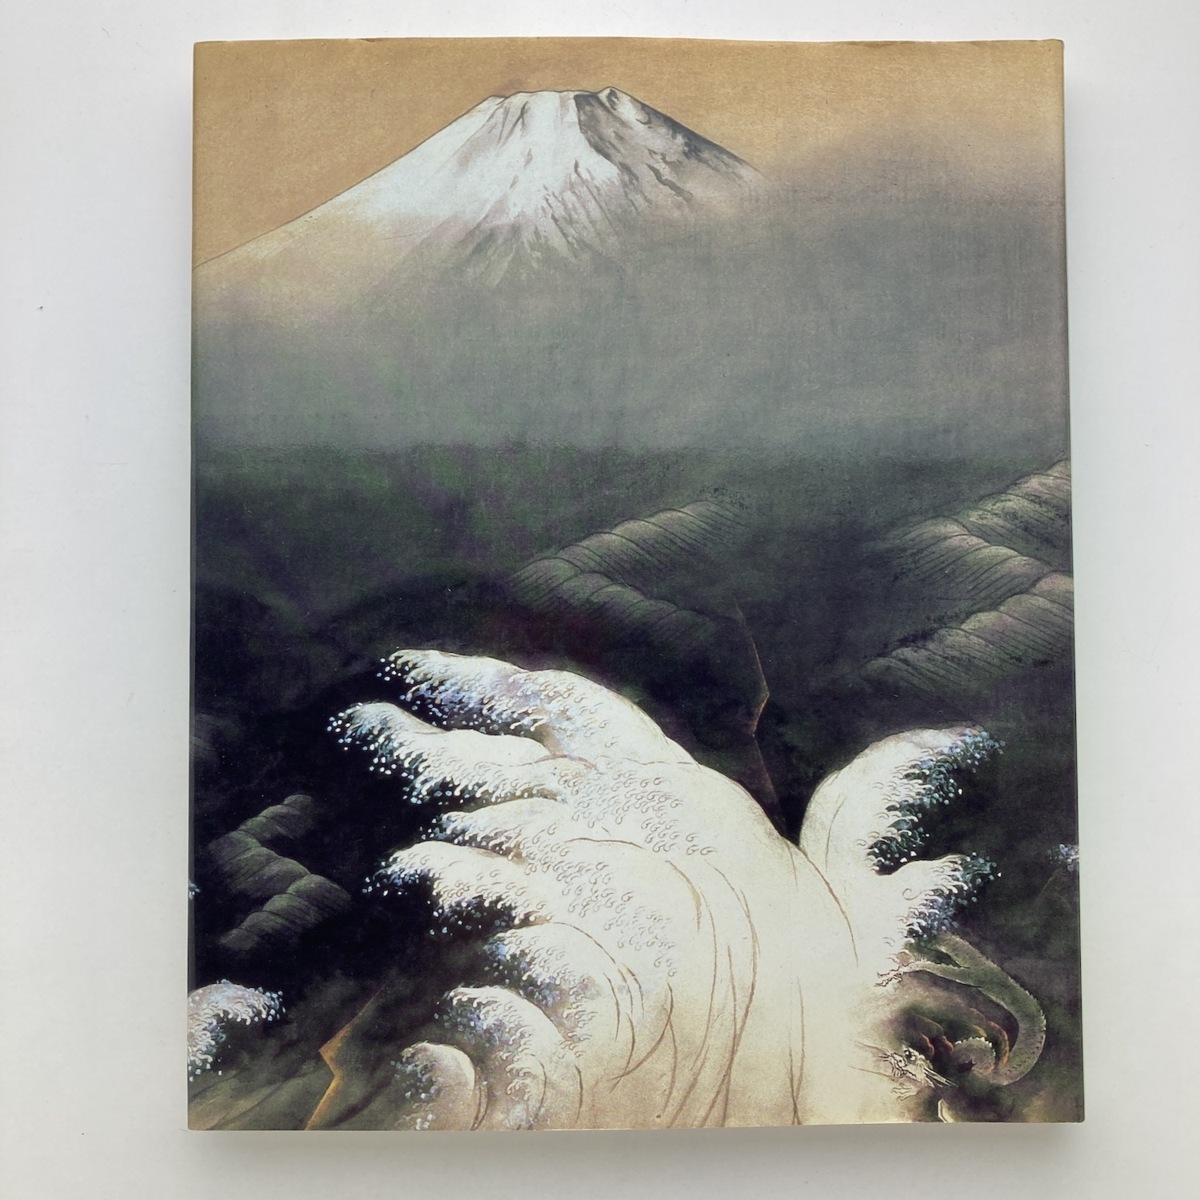 योकोयामा ताइकन समुद्र की दुनिया, पहाड़ों, और स्काई होक्काइडो आधुनिक कला संग्रहालय 1995 यू-मेल, चित्रकारी, कला पुस्तक, कार्यों का संग्रह, सचित्र सूची